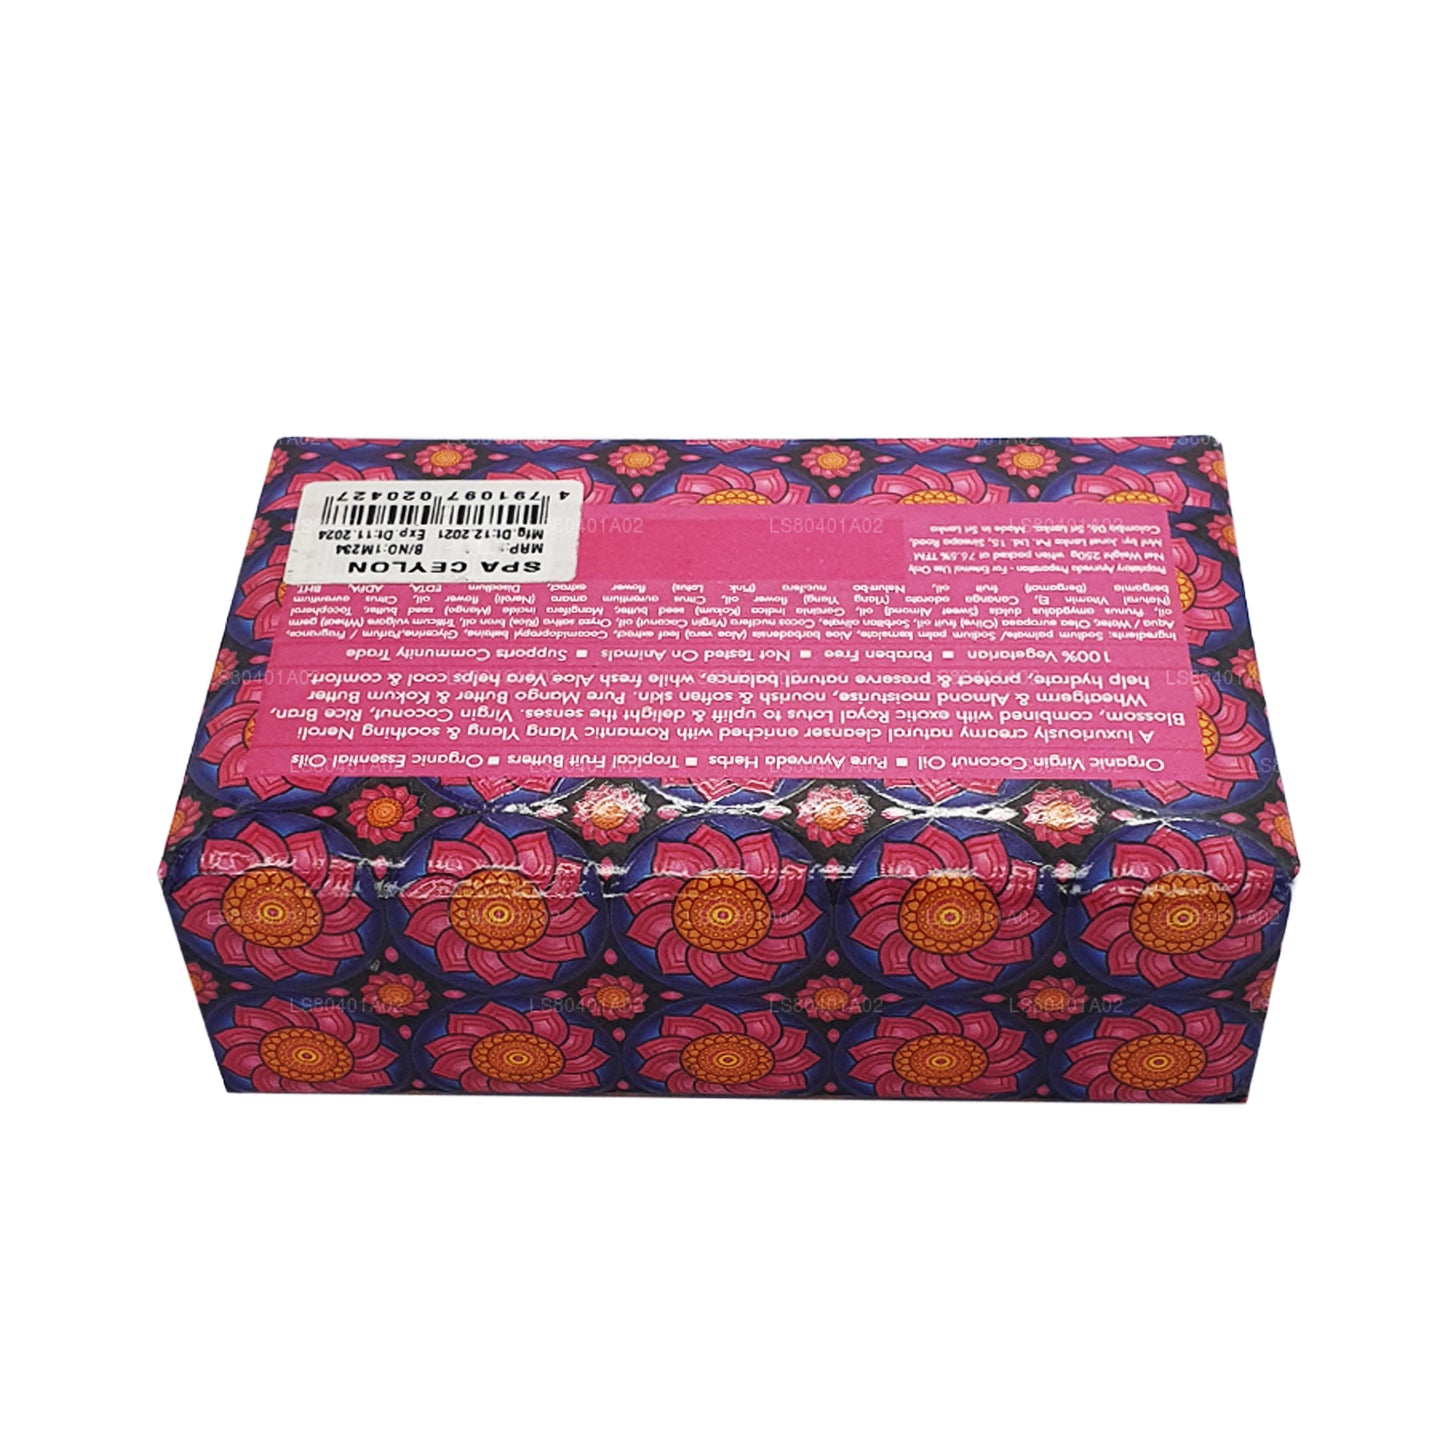 Jabón de lujo Spa Ceylon Pink Lotus Almond (250 g)